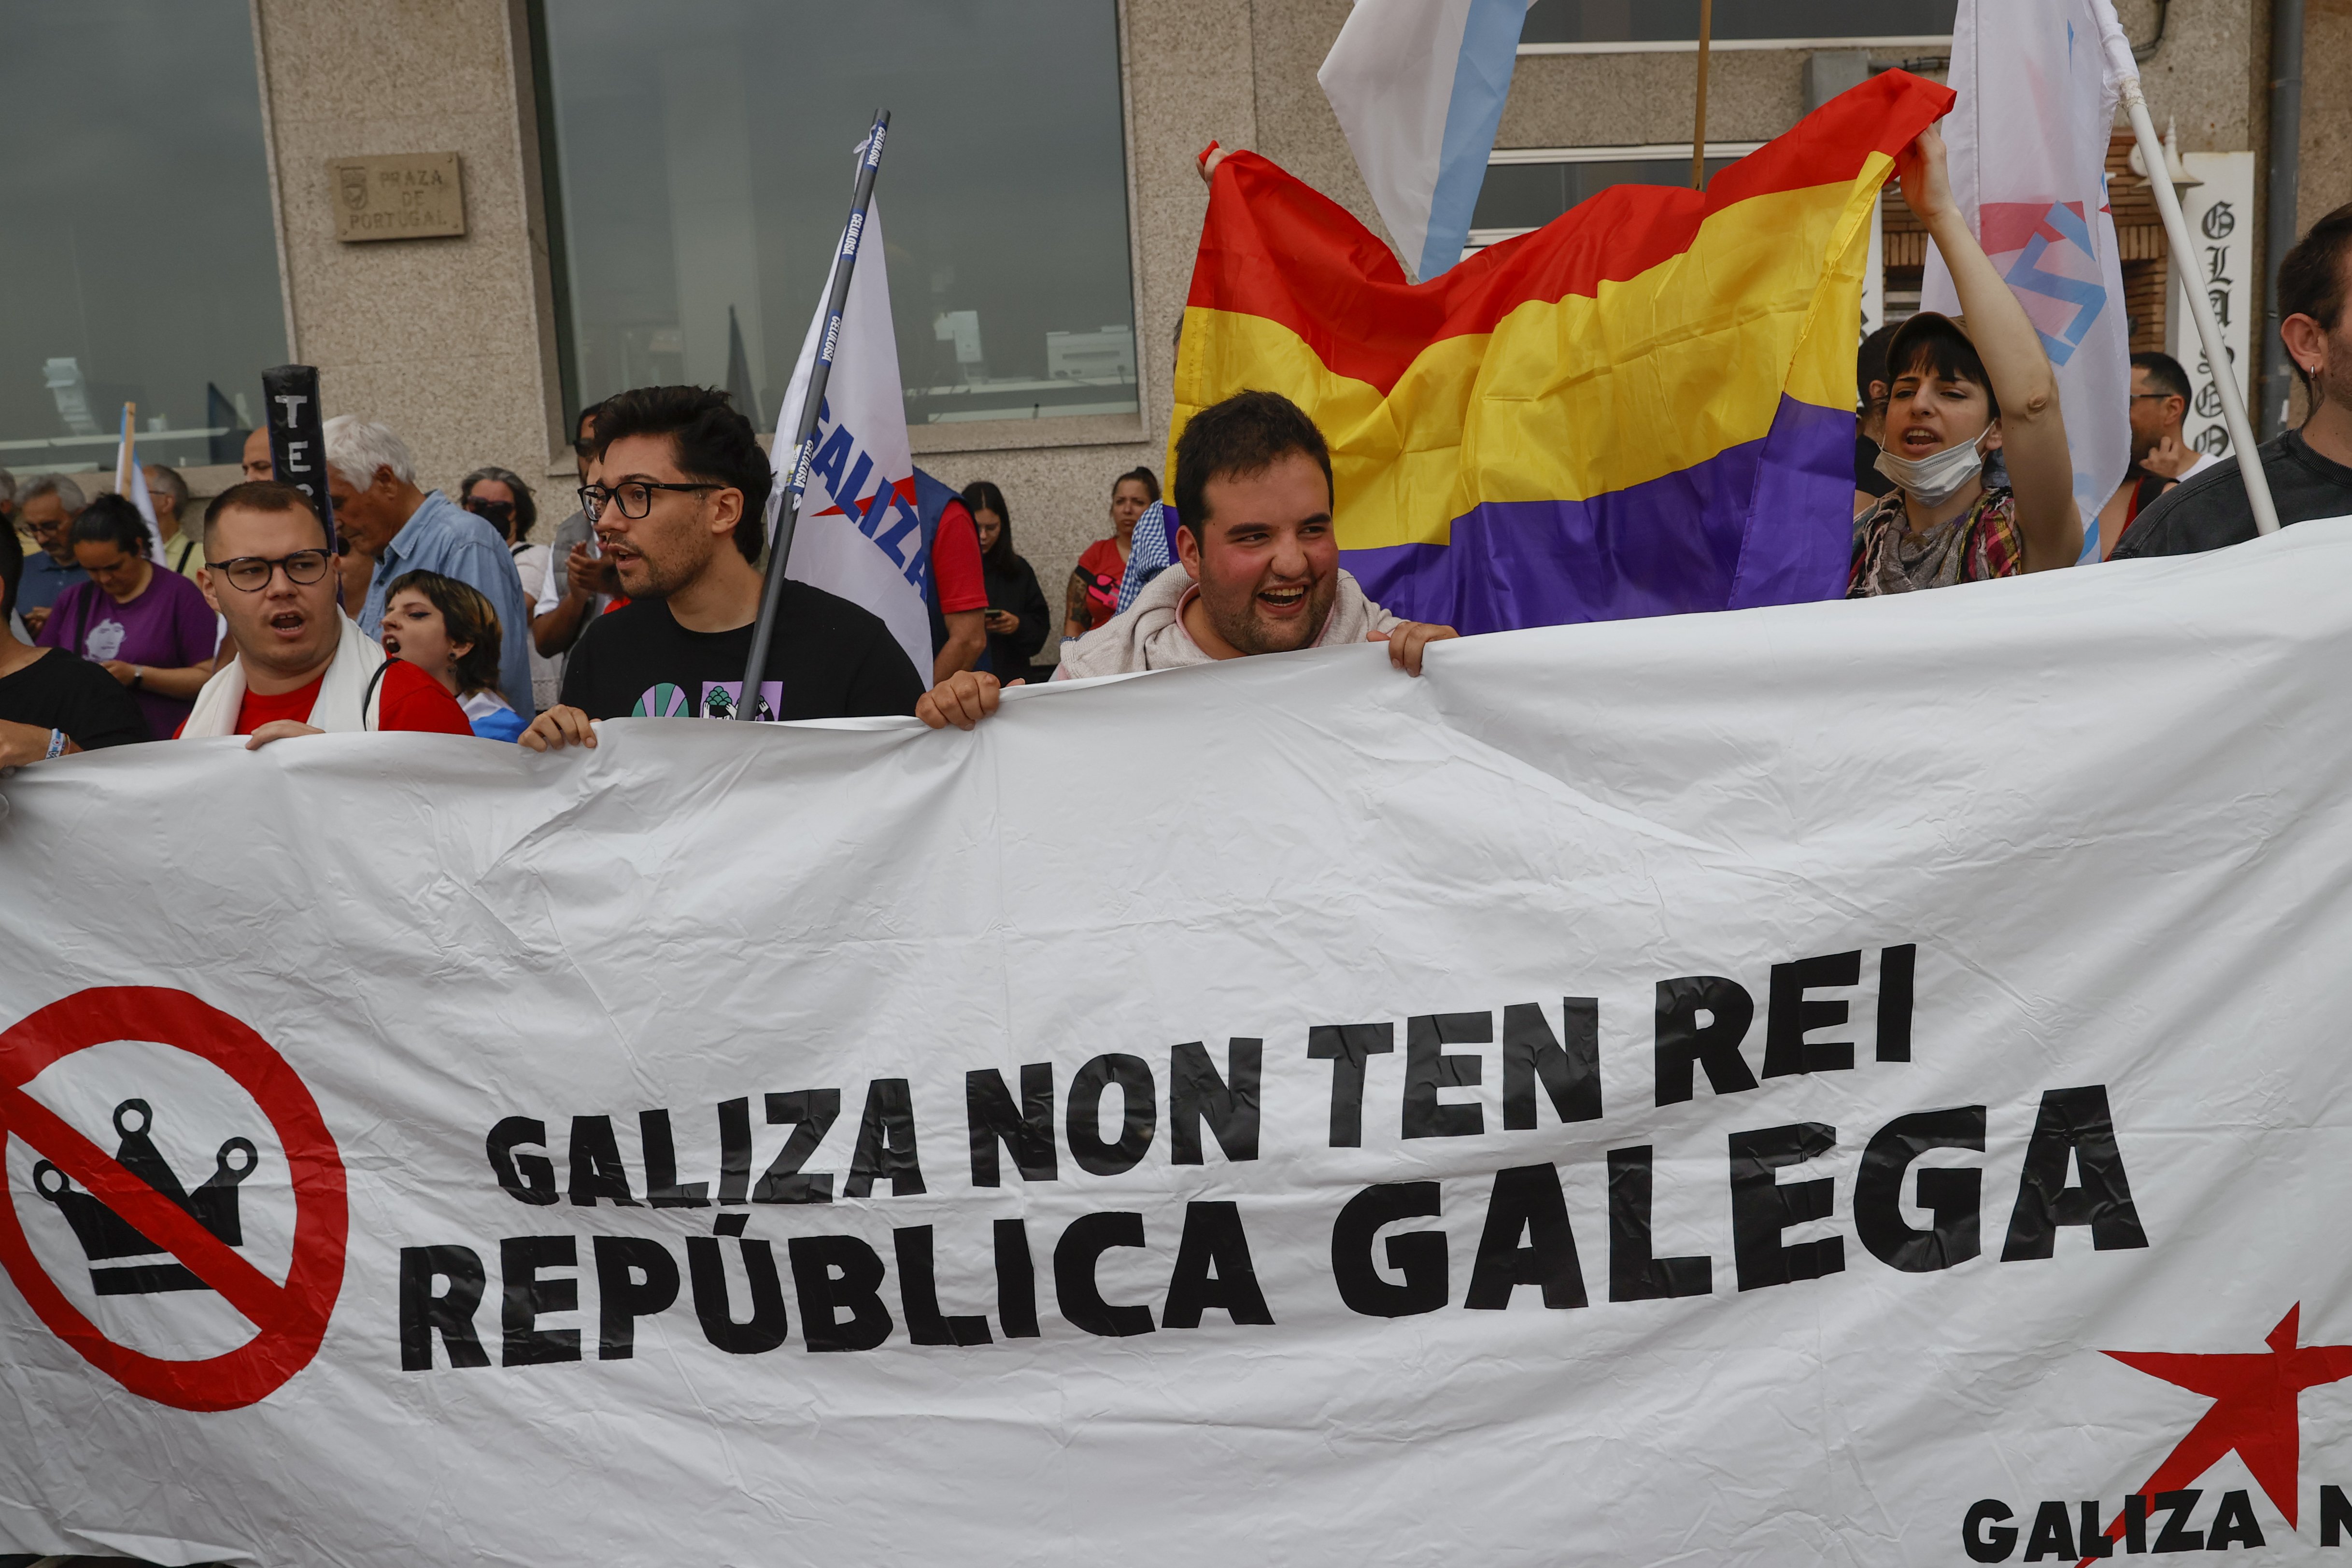 Protesta a Sanxenxo contra la visita de Joan Carles: "Galiza non ten rei'"